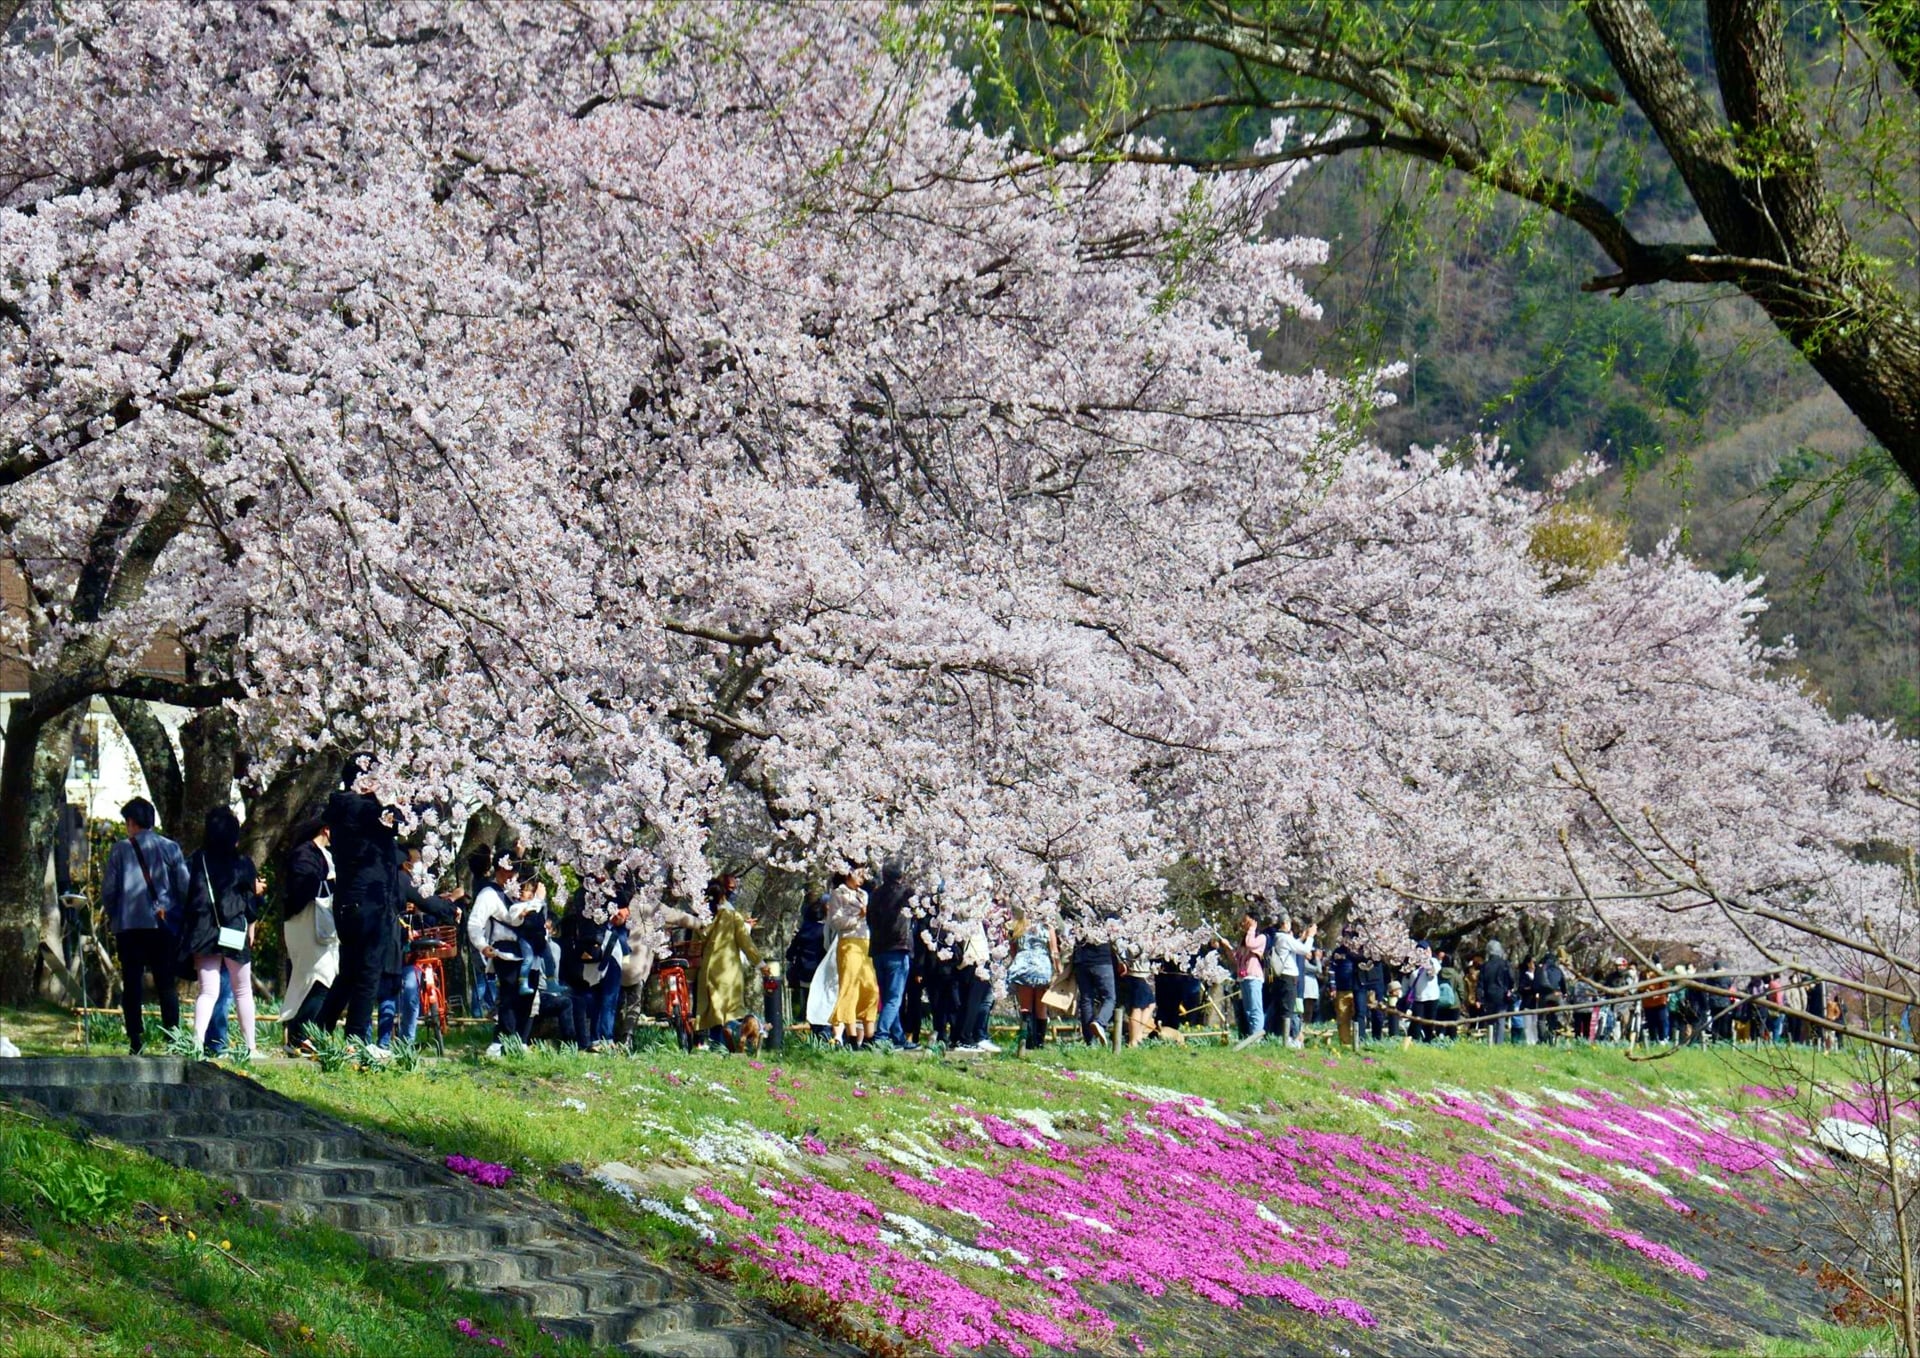 Kawazuzakura Row of cherry blossom trees by the lake